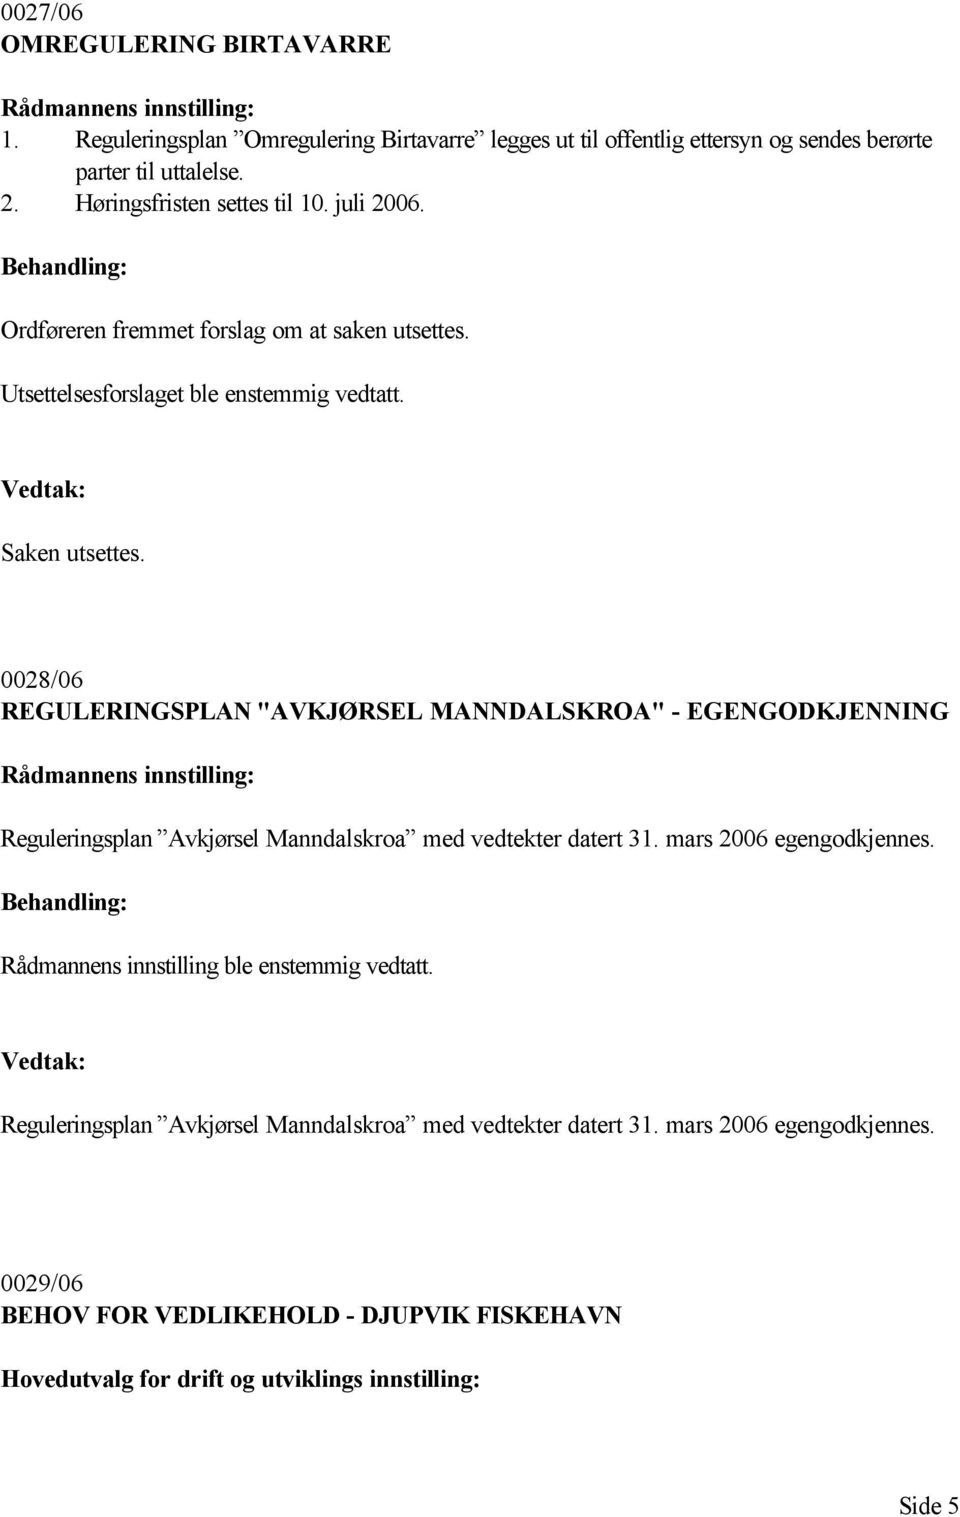 0028/06 REGULERINGSPLAN "AVKJØRSEL MANNDALSKROA" - EGENGODKJENNING Rådmannens innstilling: Reguleringsplan Avkjørsel Manndalskroa med vedtekter datert 31. mars 2006 egengodkjennes.